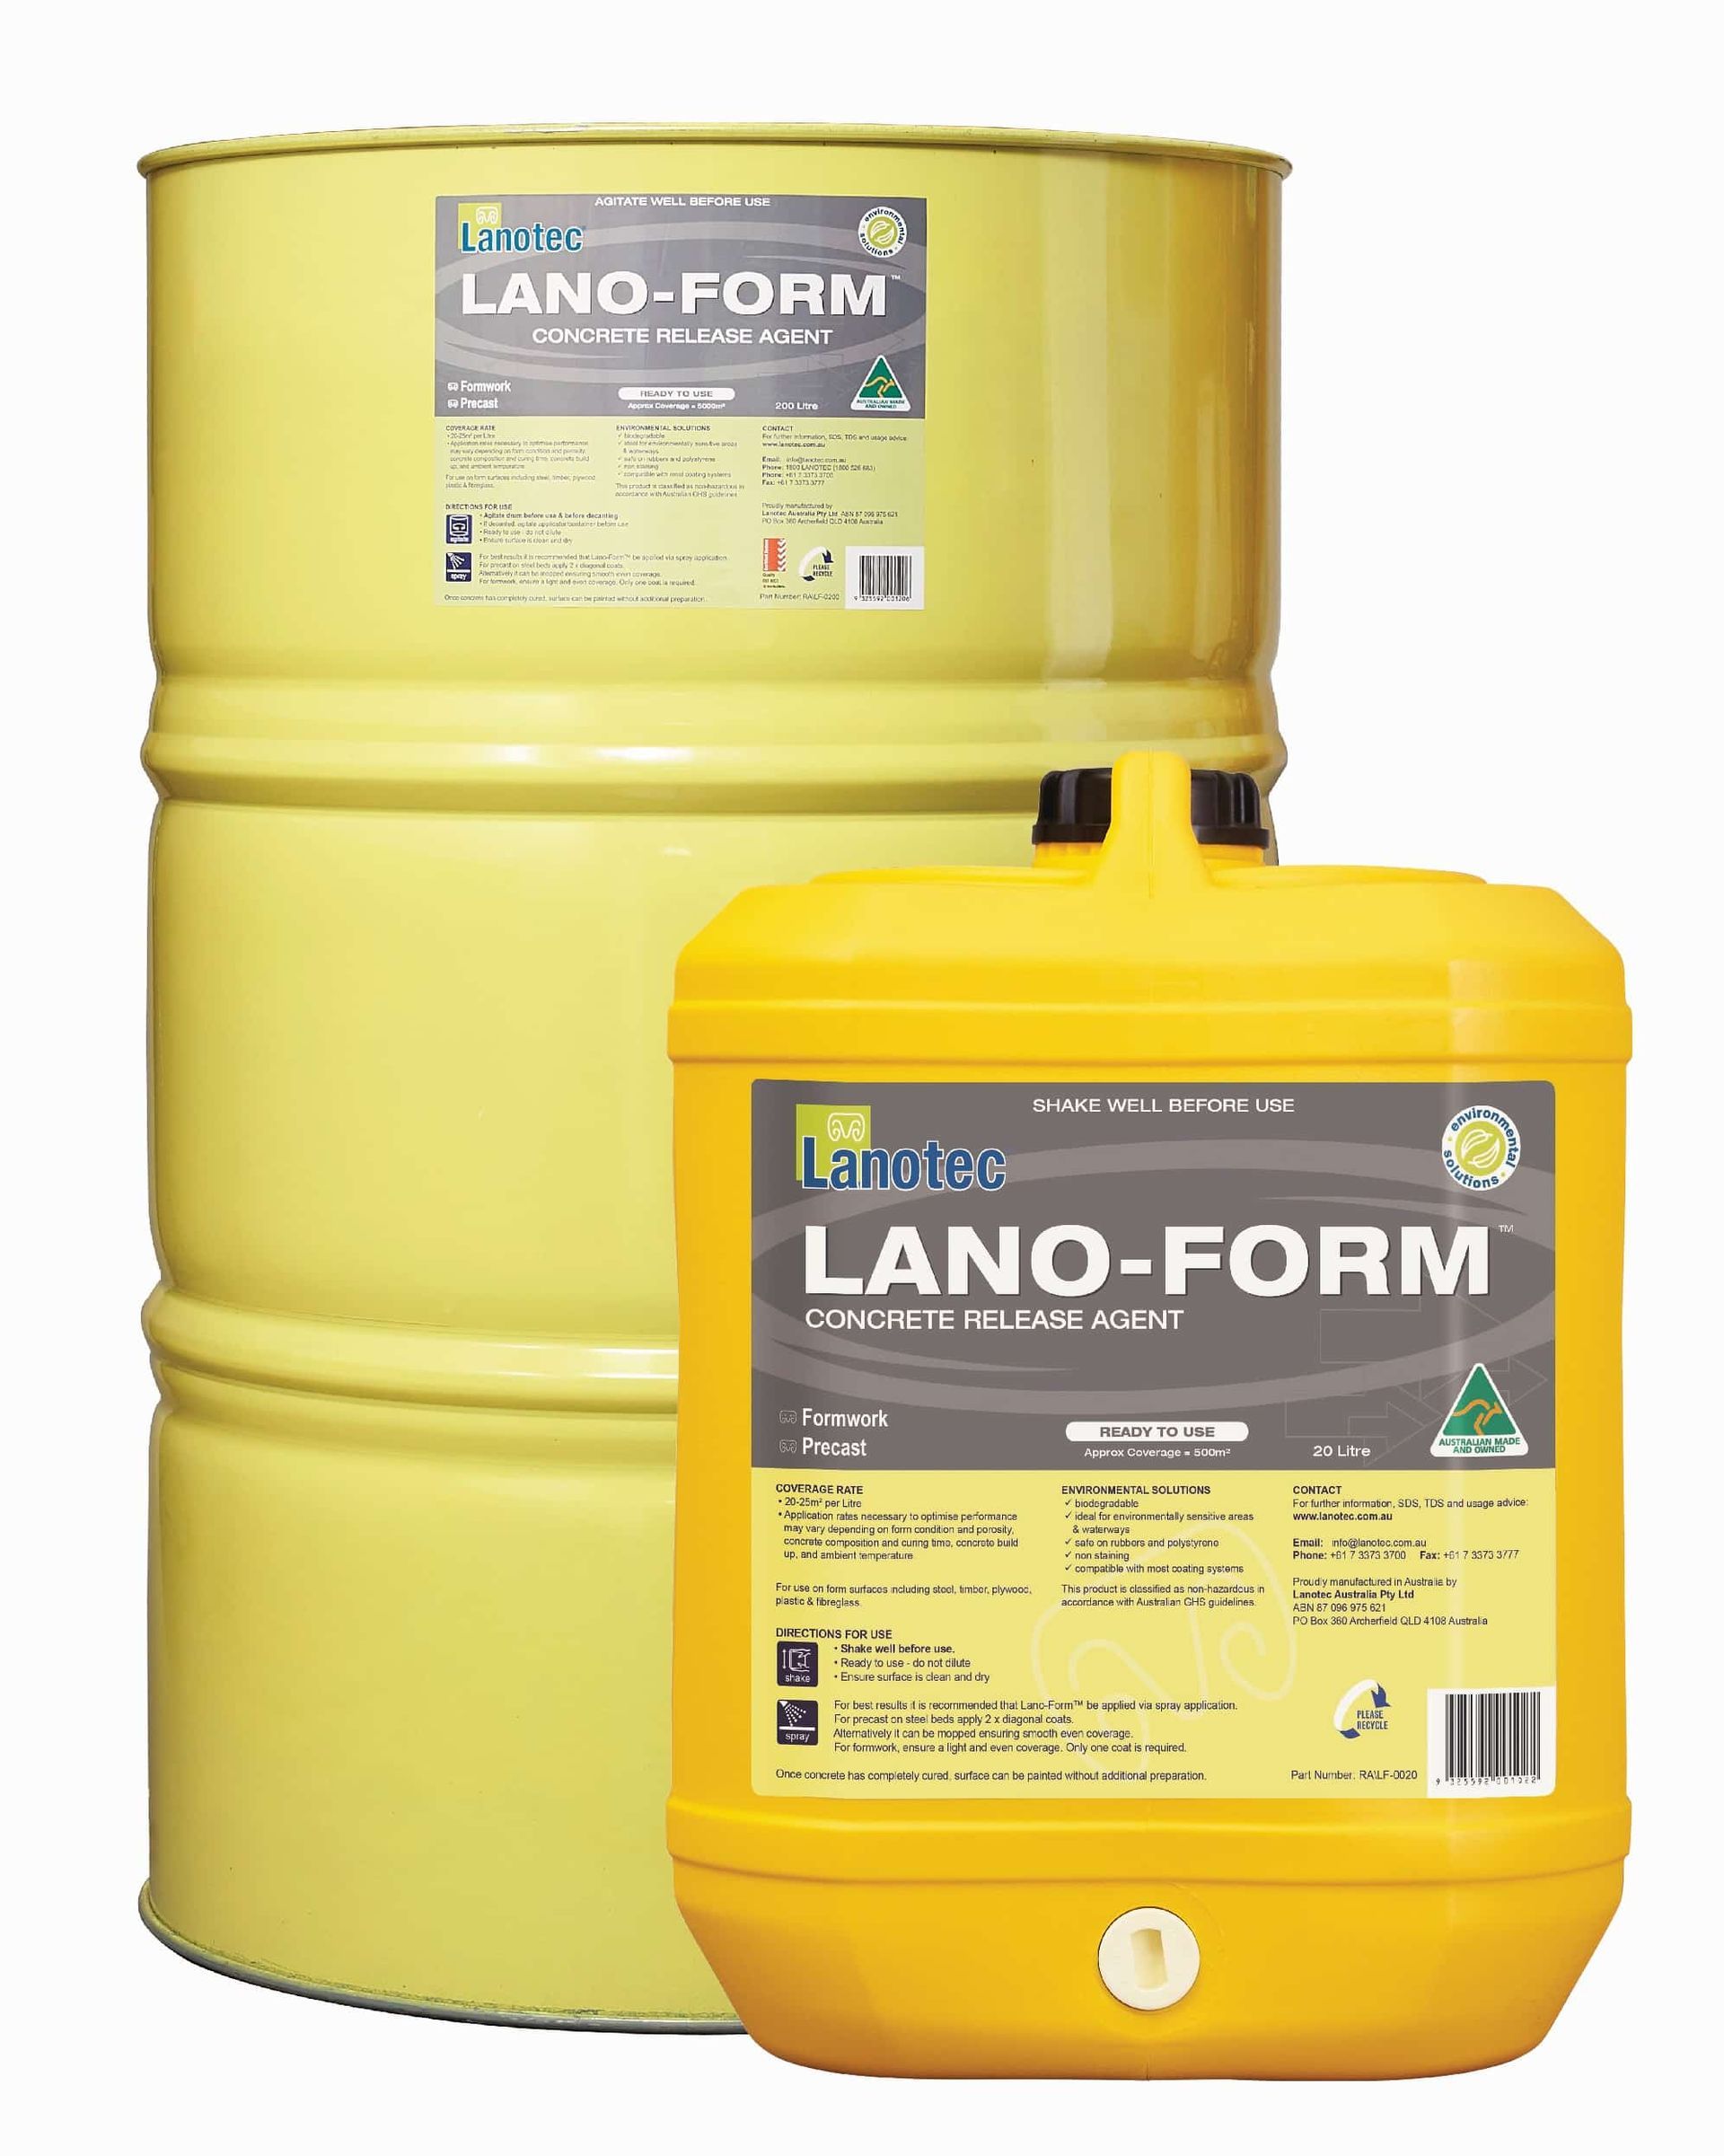 Lanotec Lano-Form concrete release agent